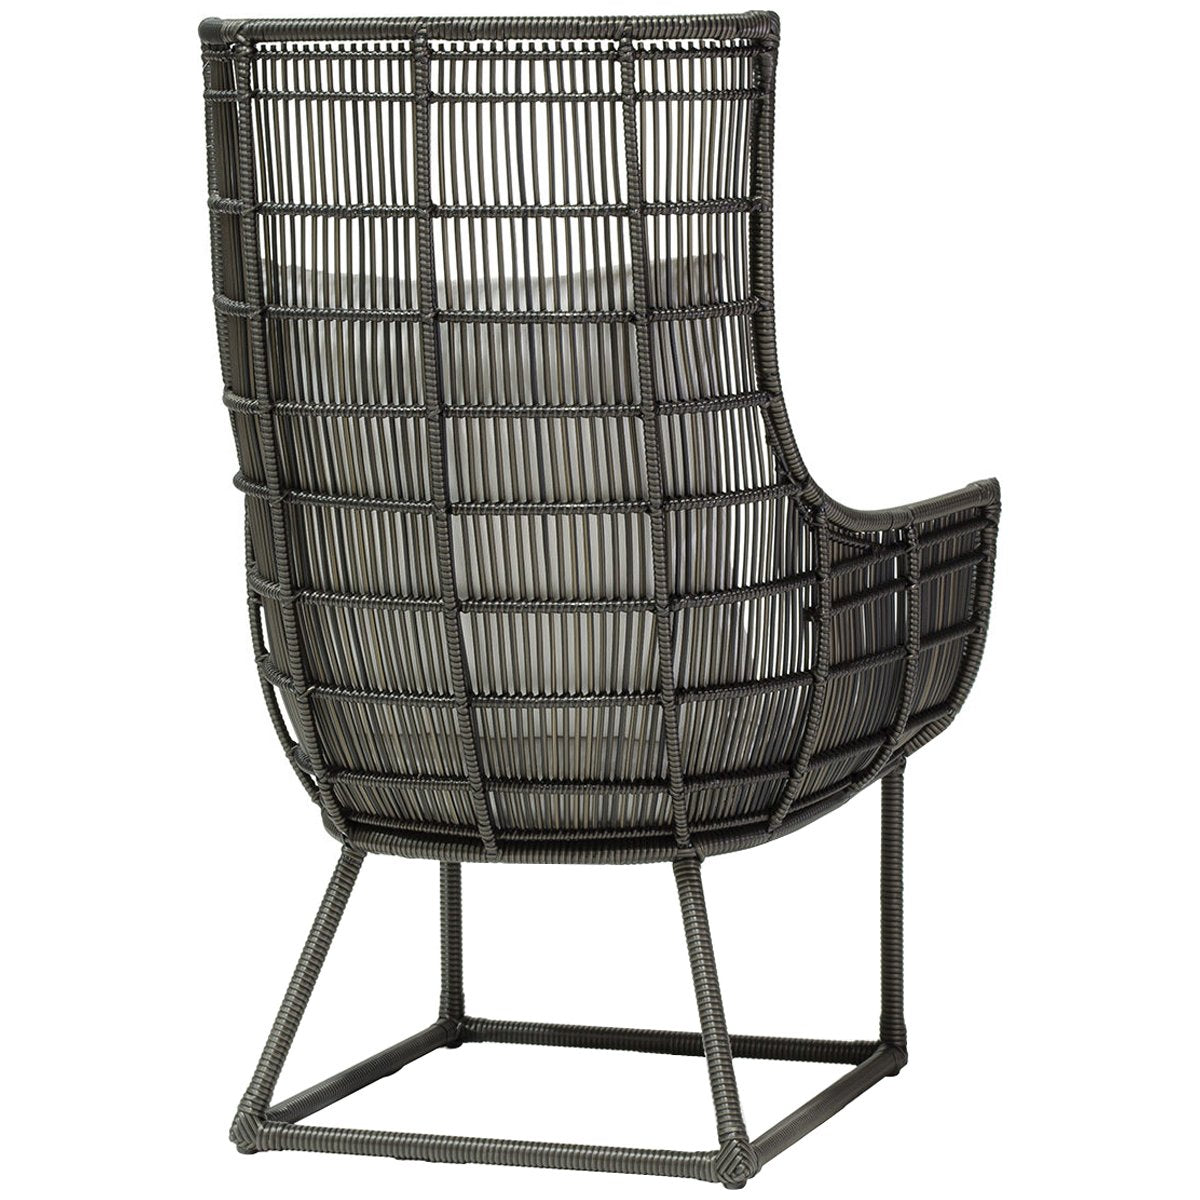 Palecek Verona Outdoor Lounge Chair